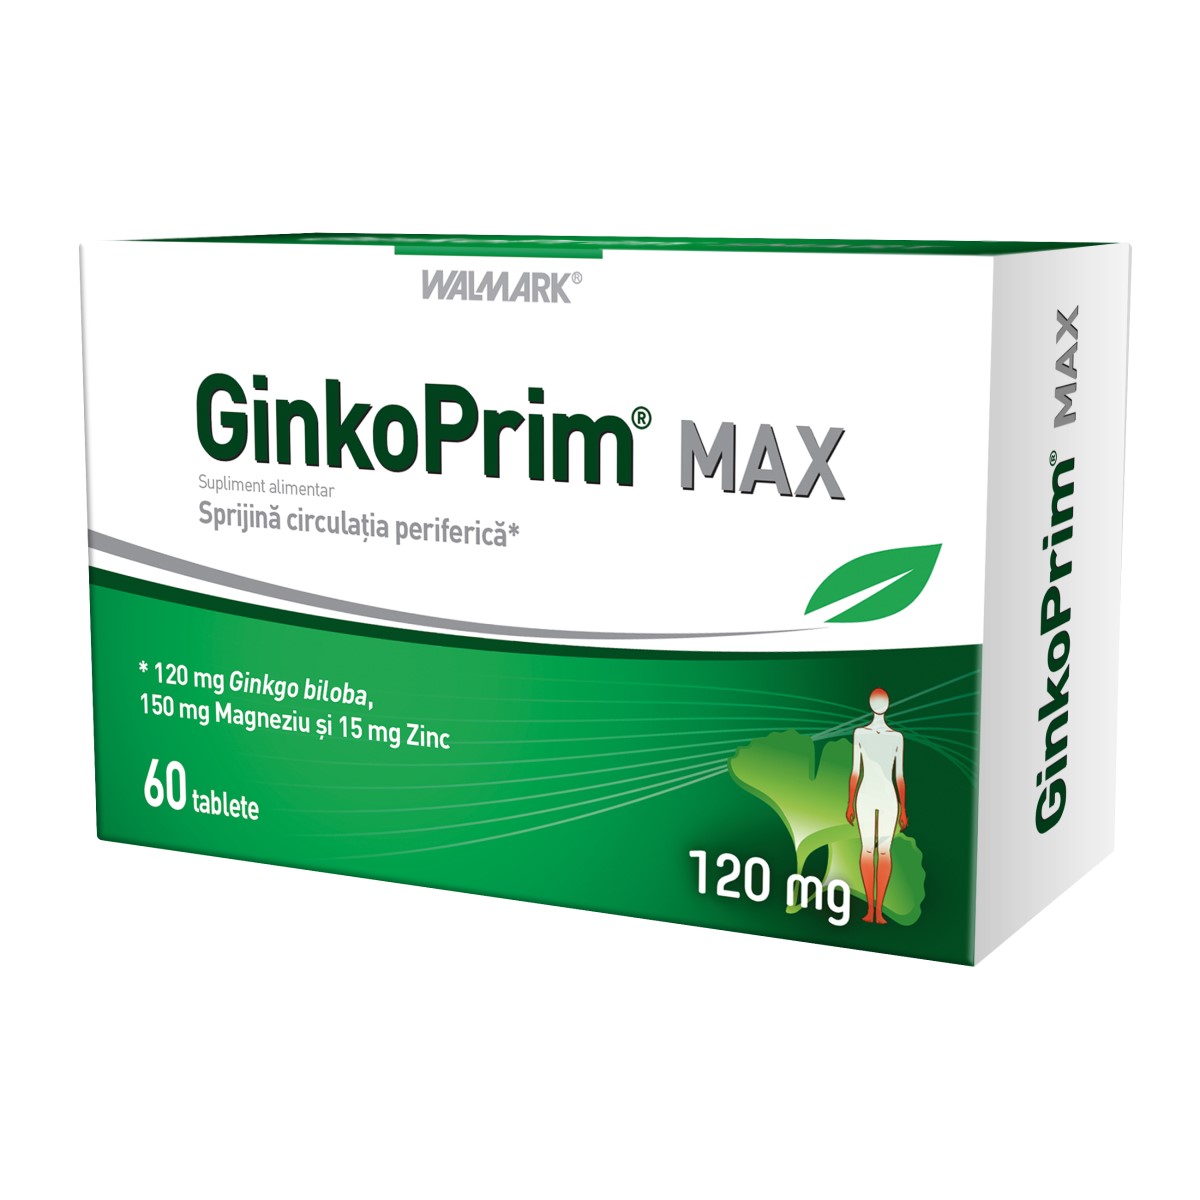 GinkoPrim Max 120mg, 60 tablete, Walmark